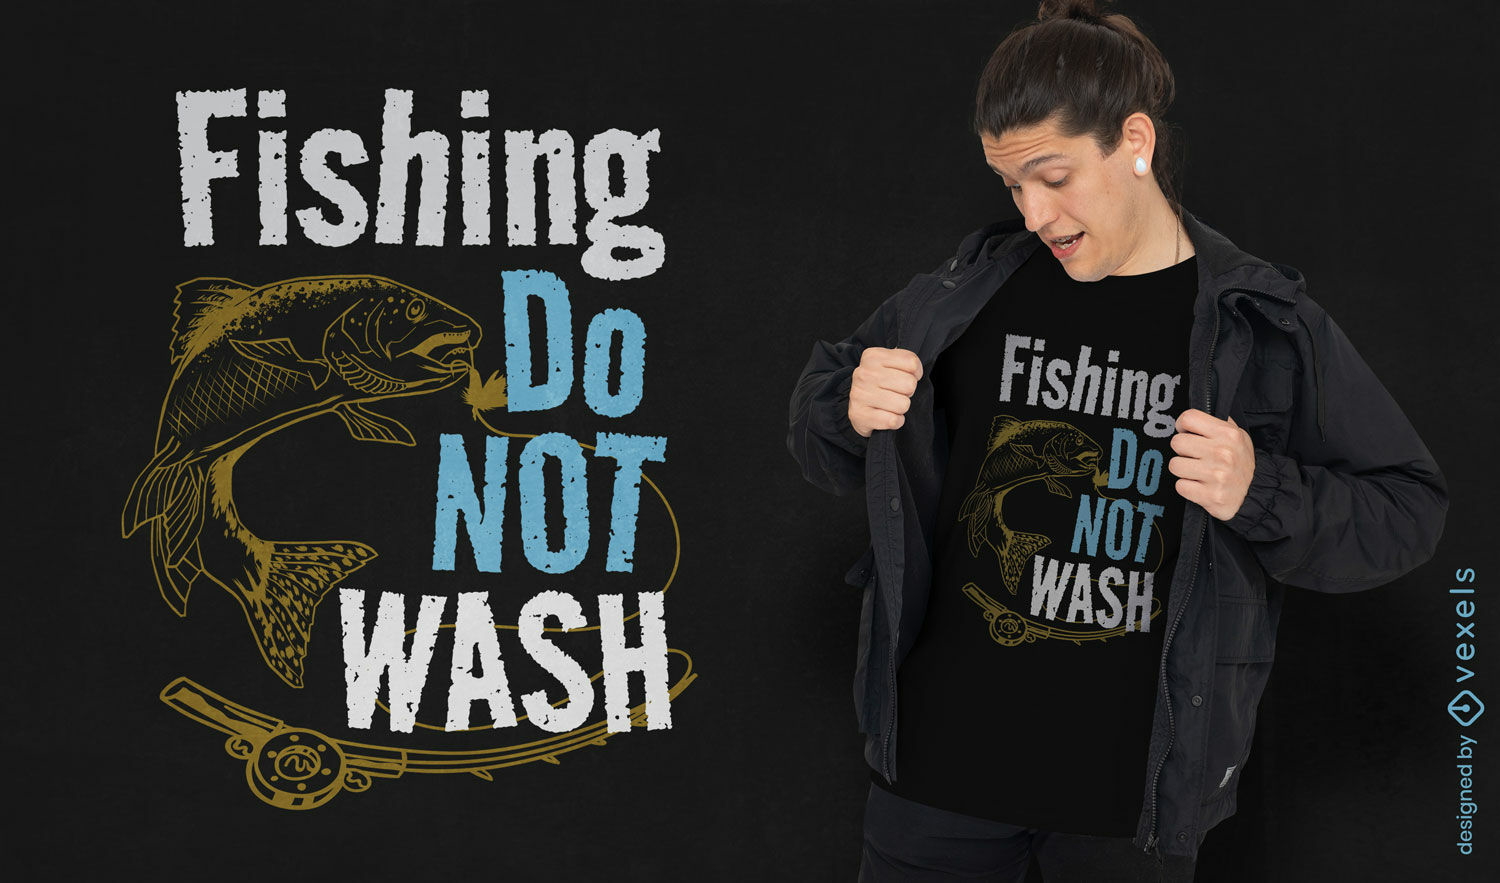 Lucky carp fishing shirt do not wash t-shirt